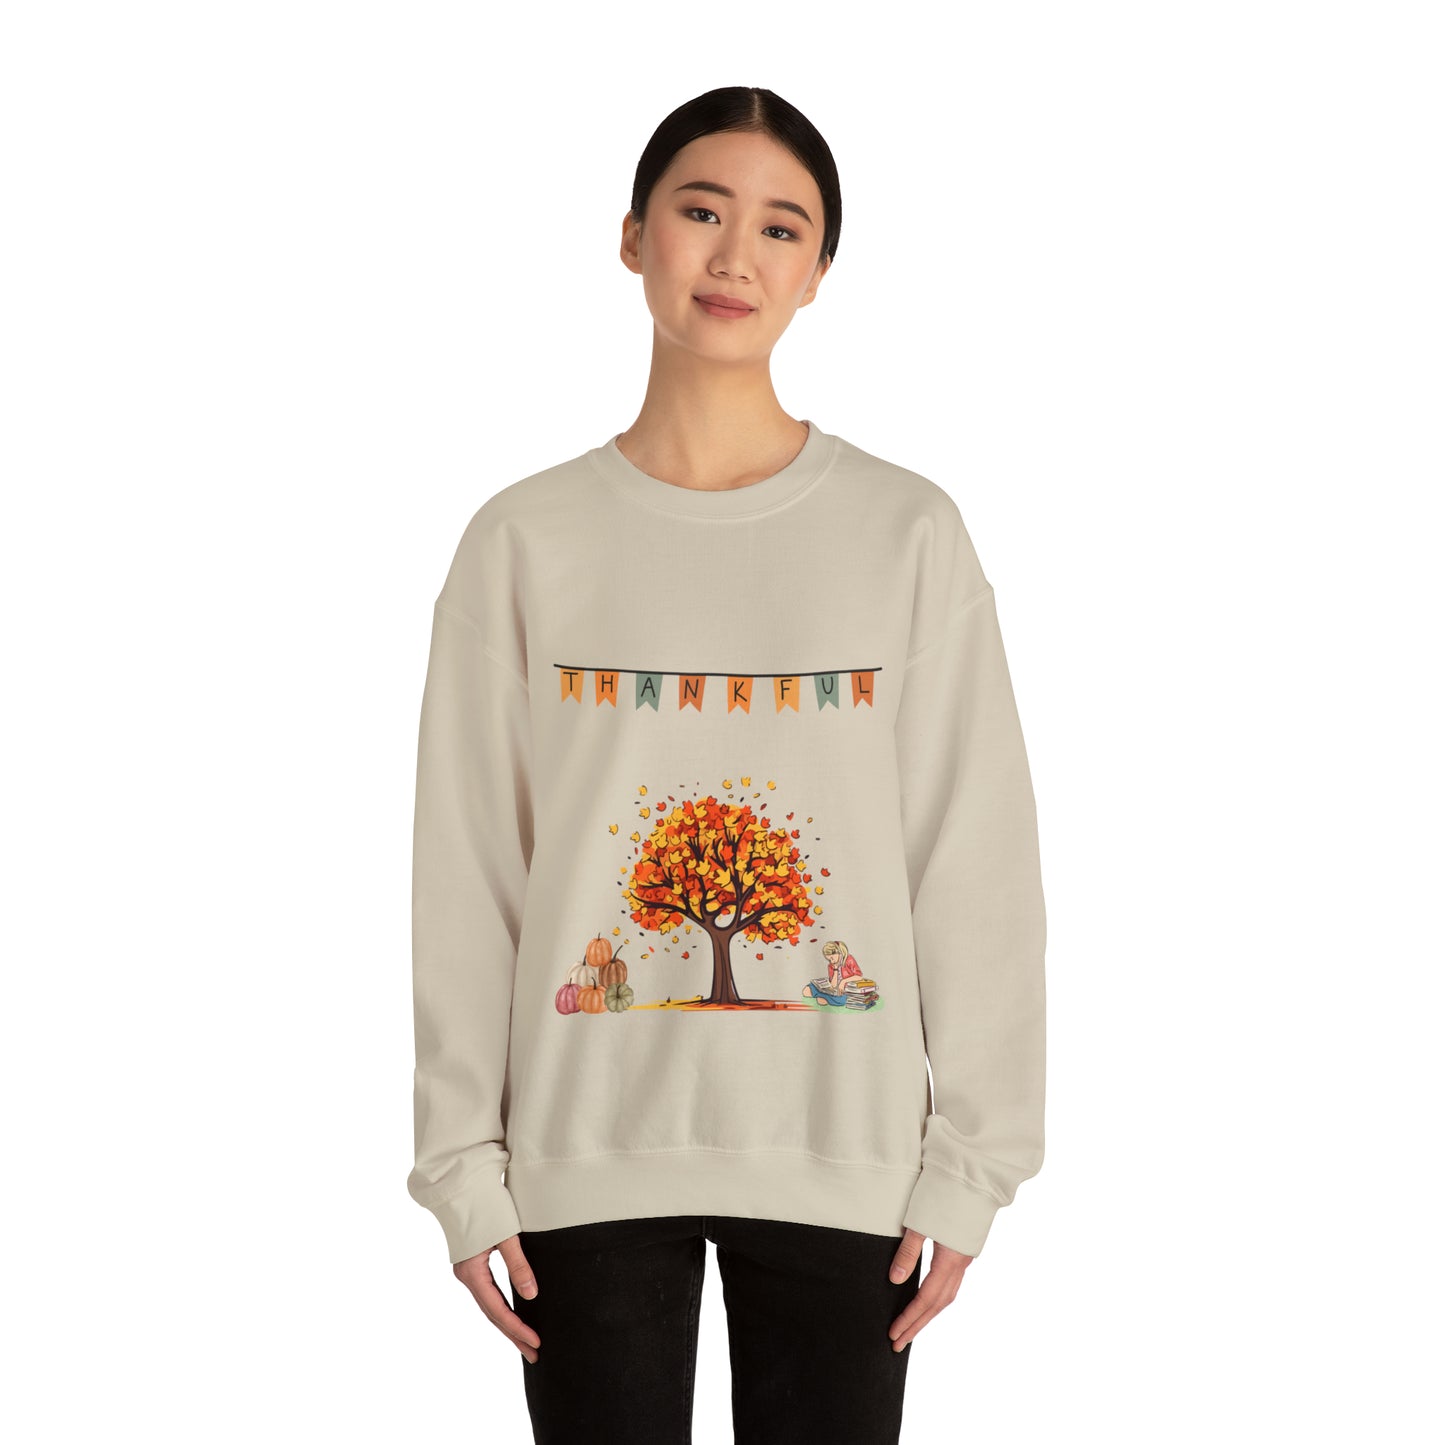 Fall Thankful Sweater!